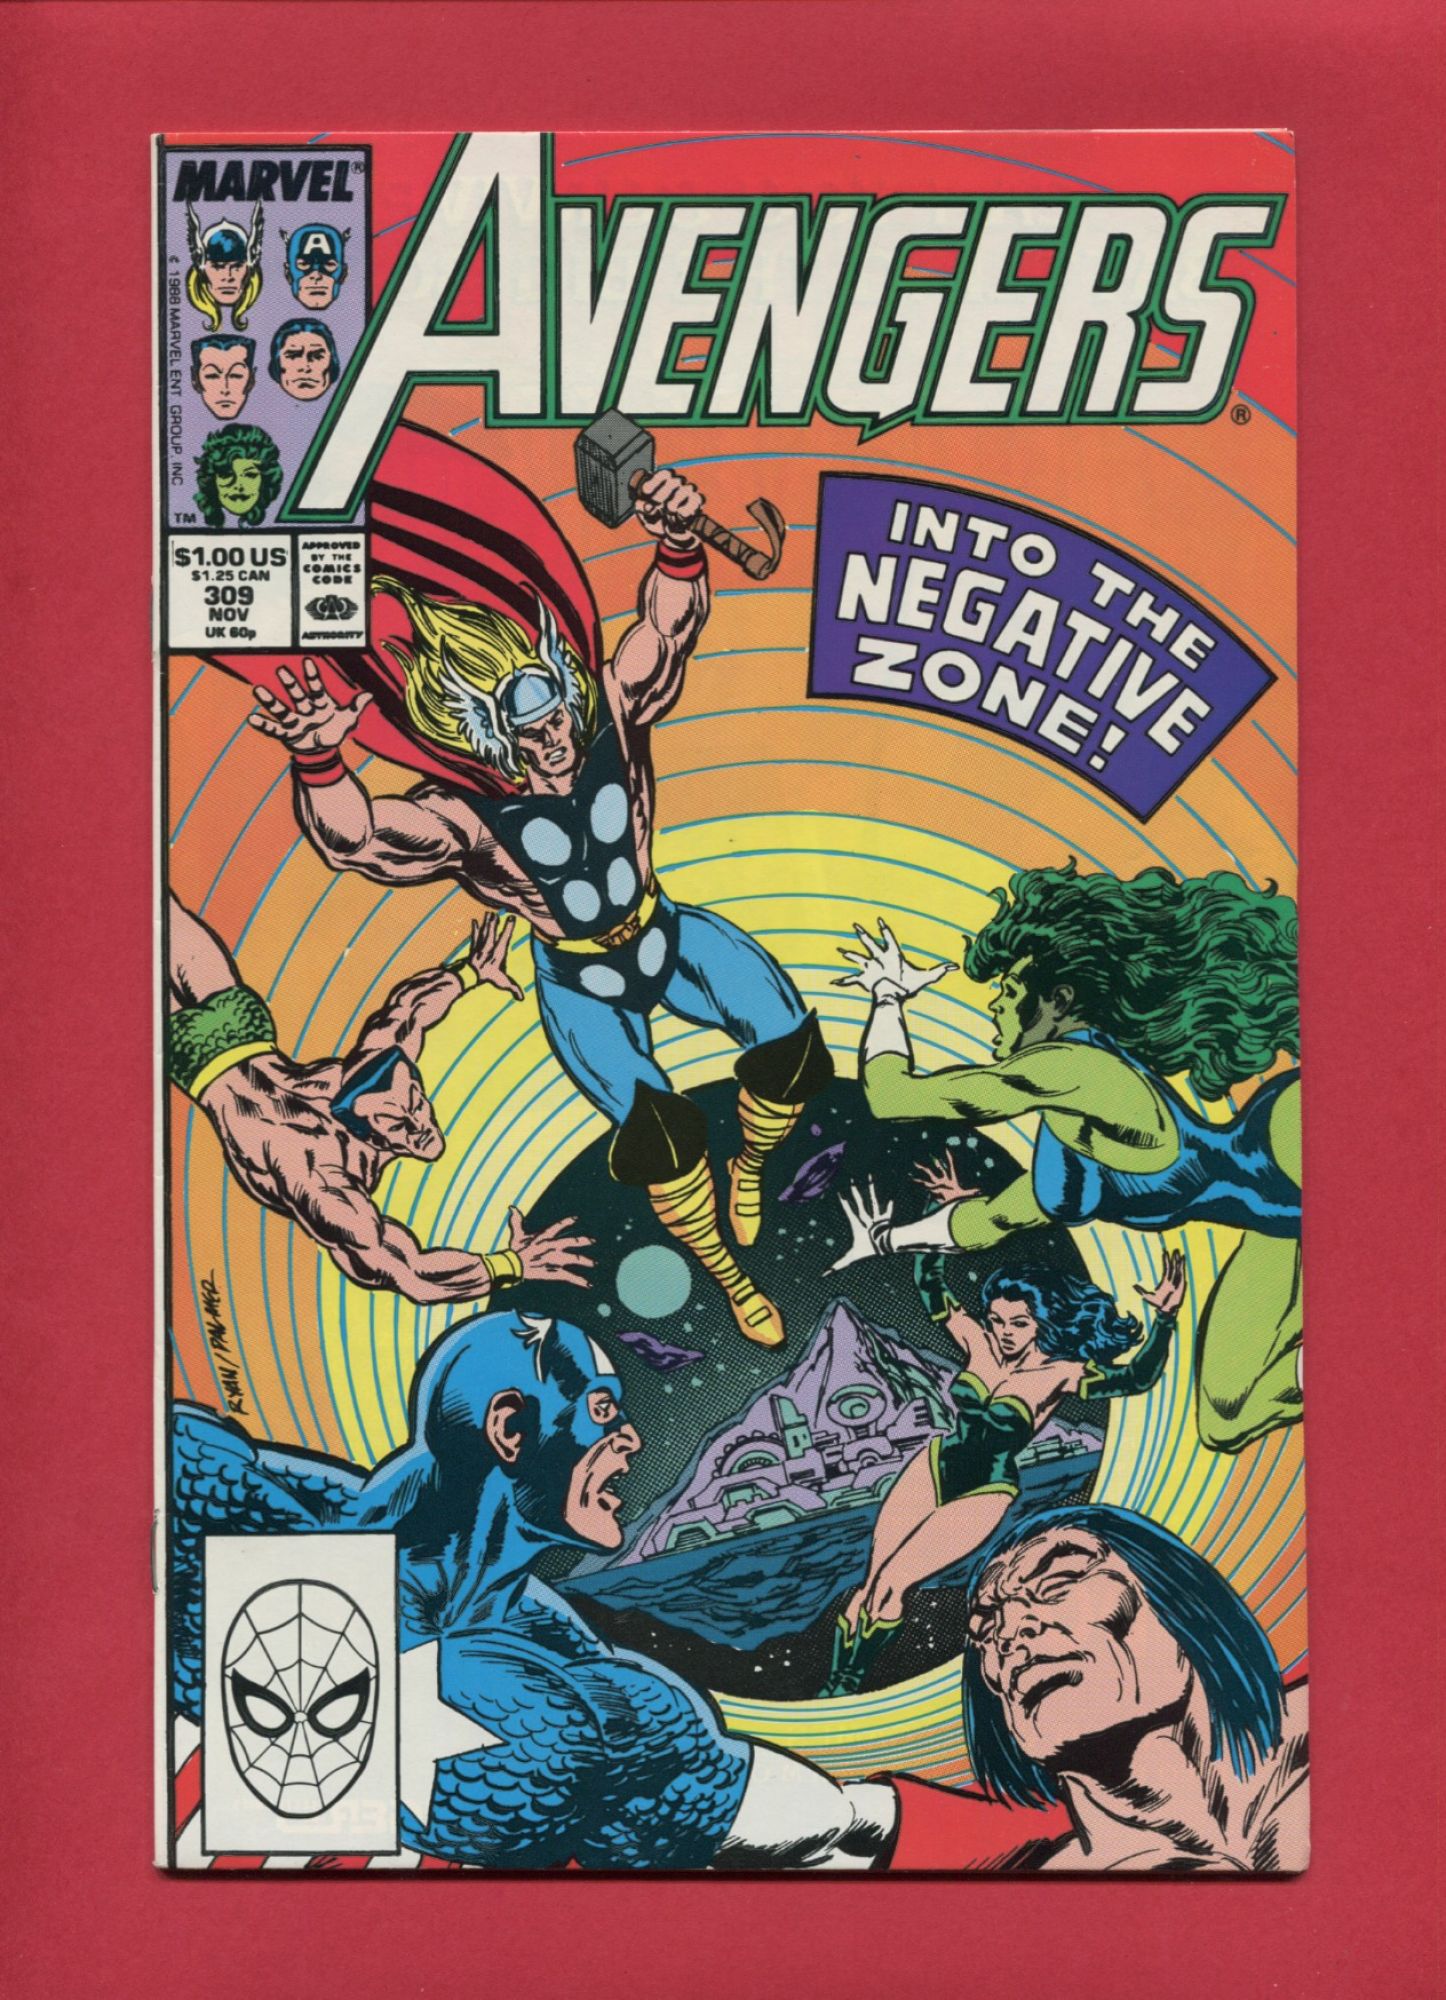 Avengers #309, Nov 1989, 8.5 VF+